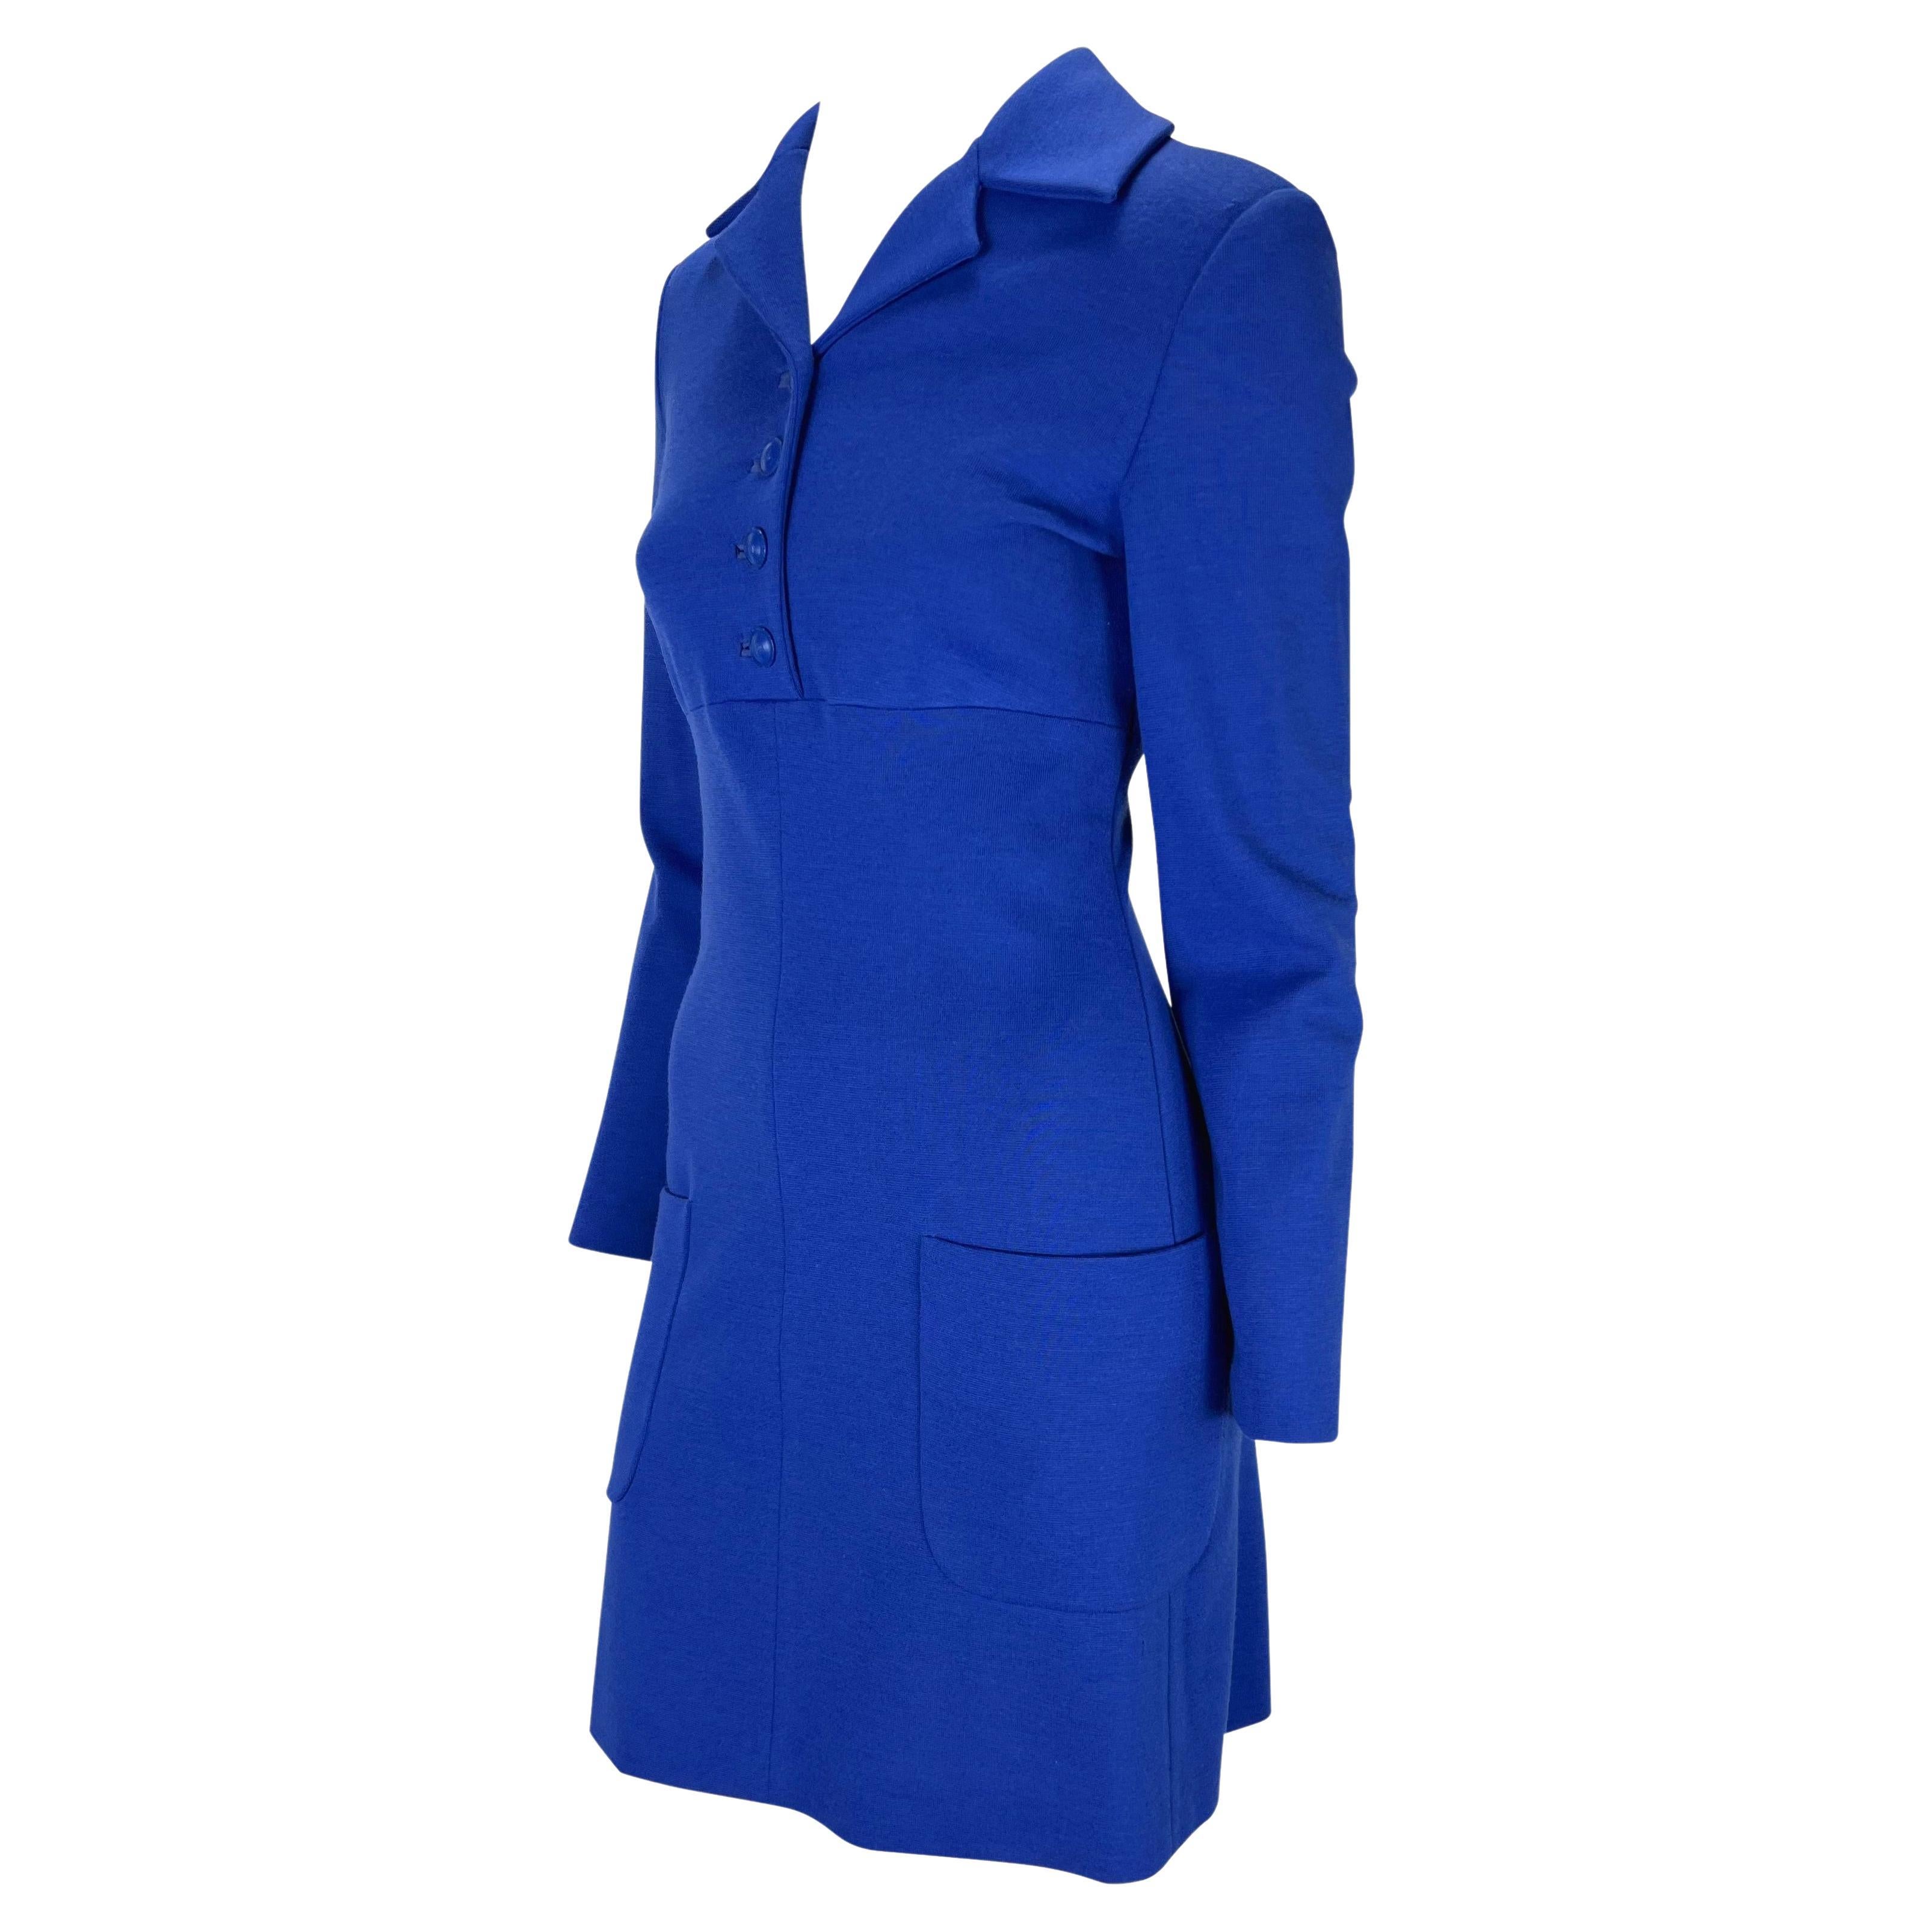 Voici une magnifique robe à col bleu conçue par Gianni Versace. Issue de la collection automne/hiver 1996, cette robe bleu roi présente des manches longues, des fermetures à boutons au niveau du buste, un col et des poches sur les hanches. Une